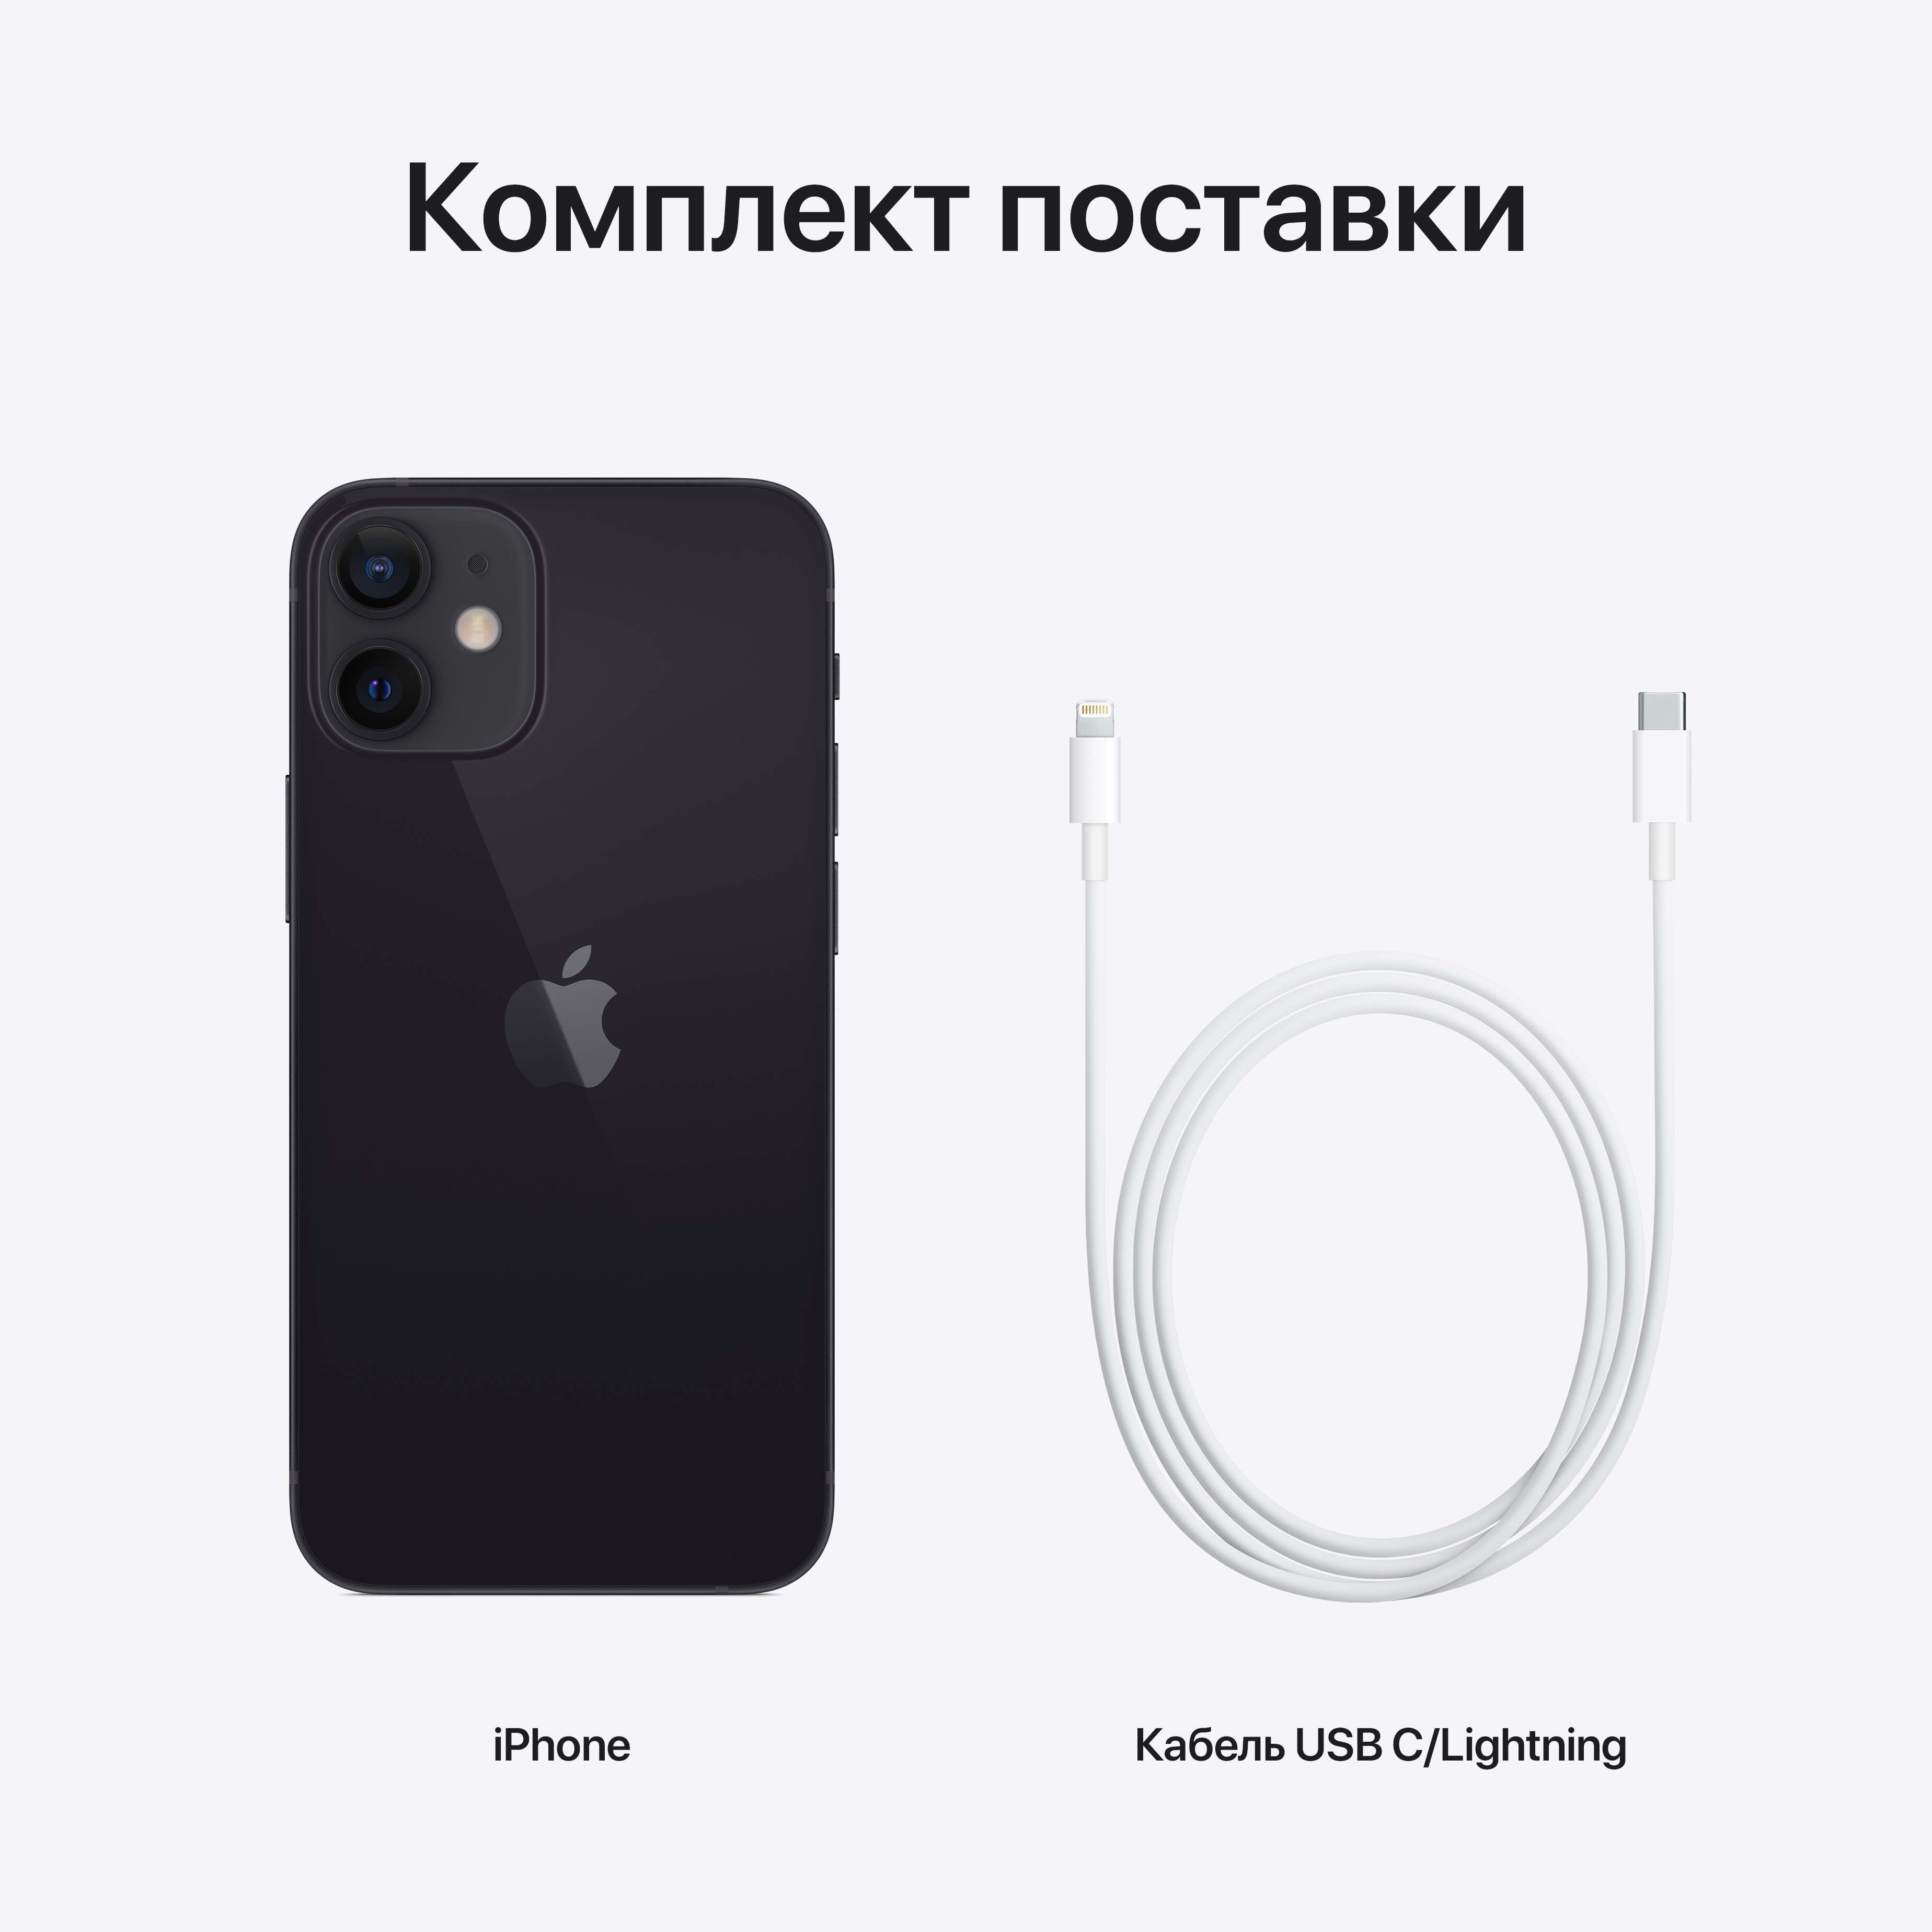 Смартфон Apple A2399 iPhone 12 mini 64Gb фиолетовый (MJQF3ZP/A)